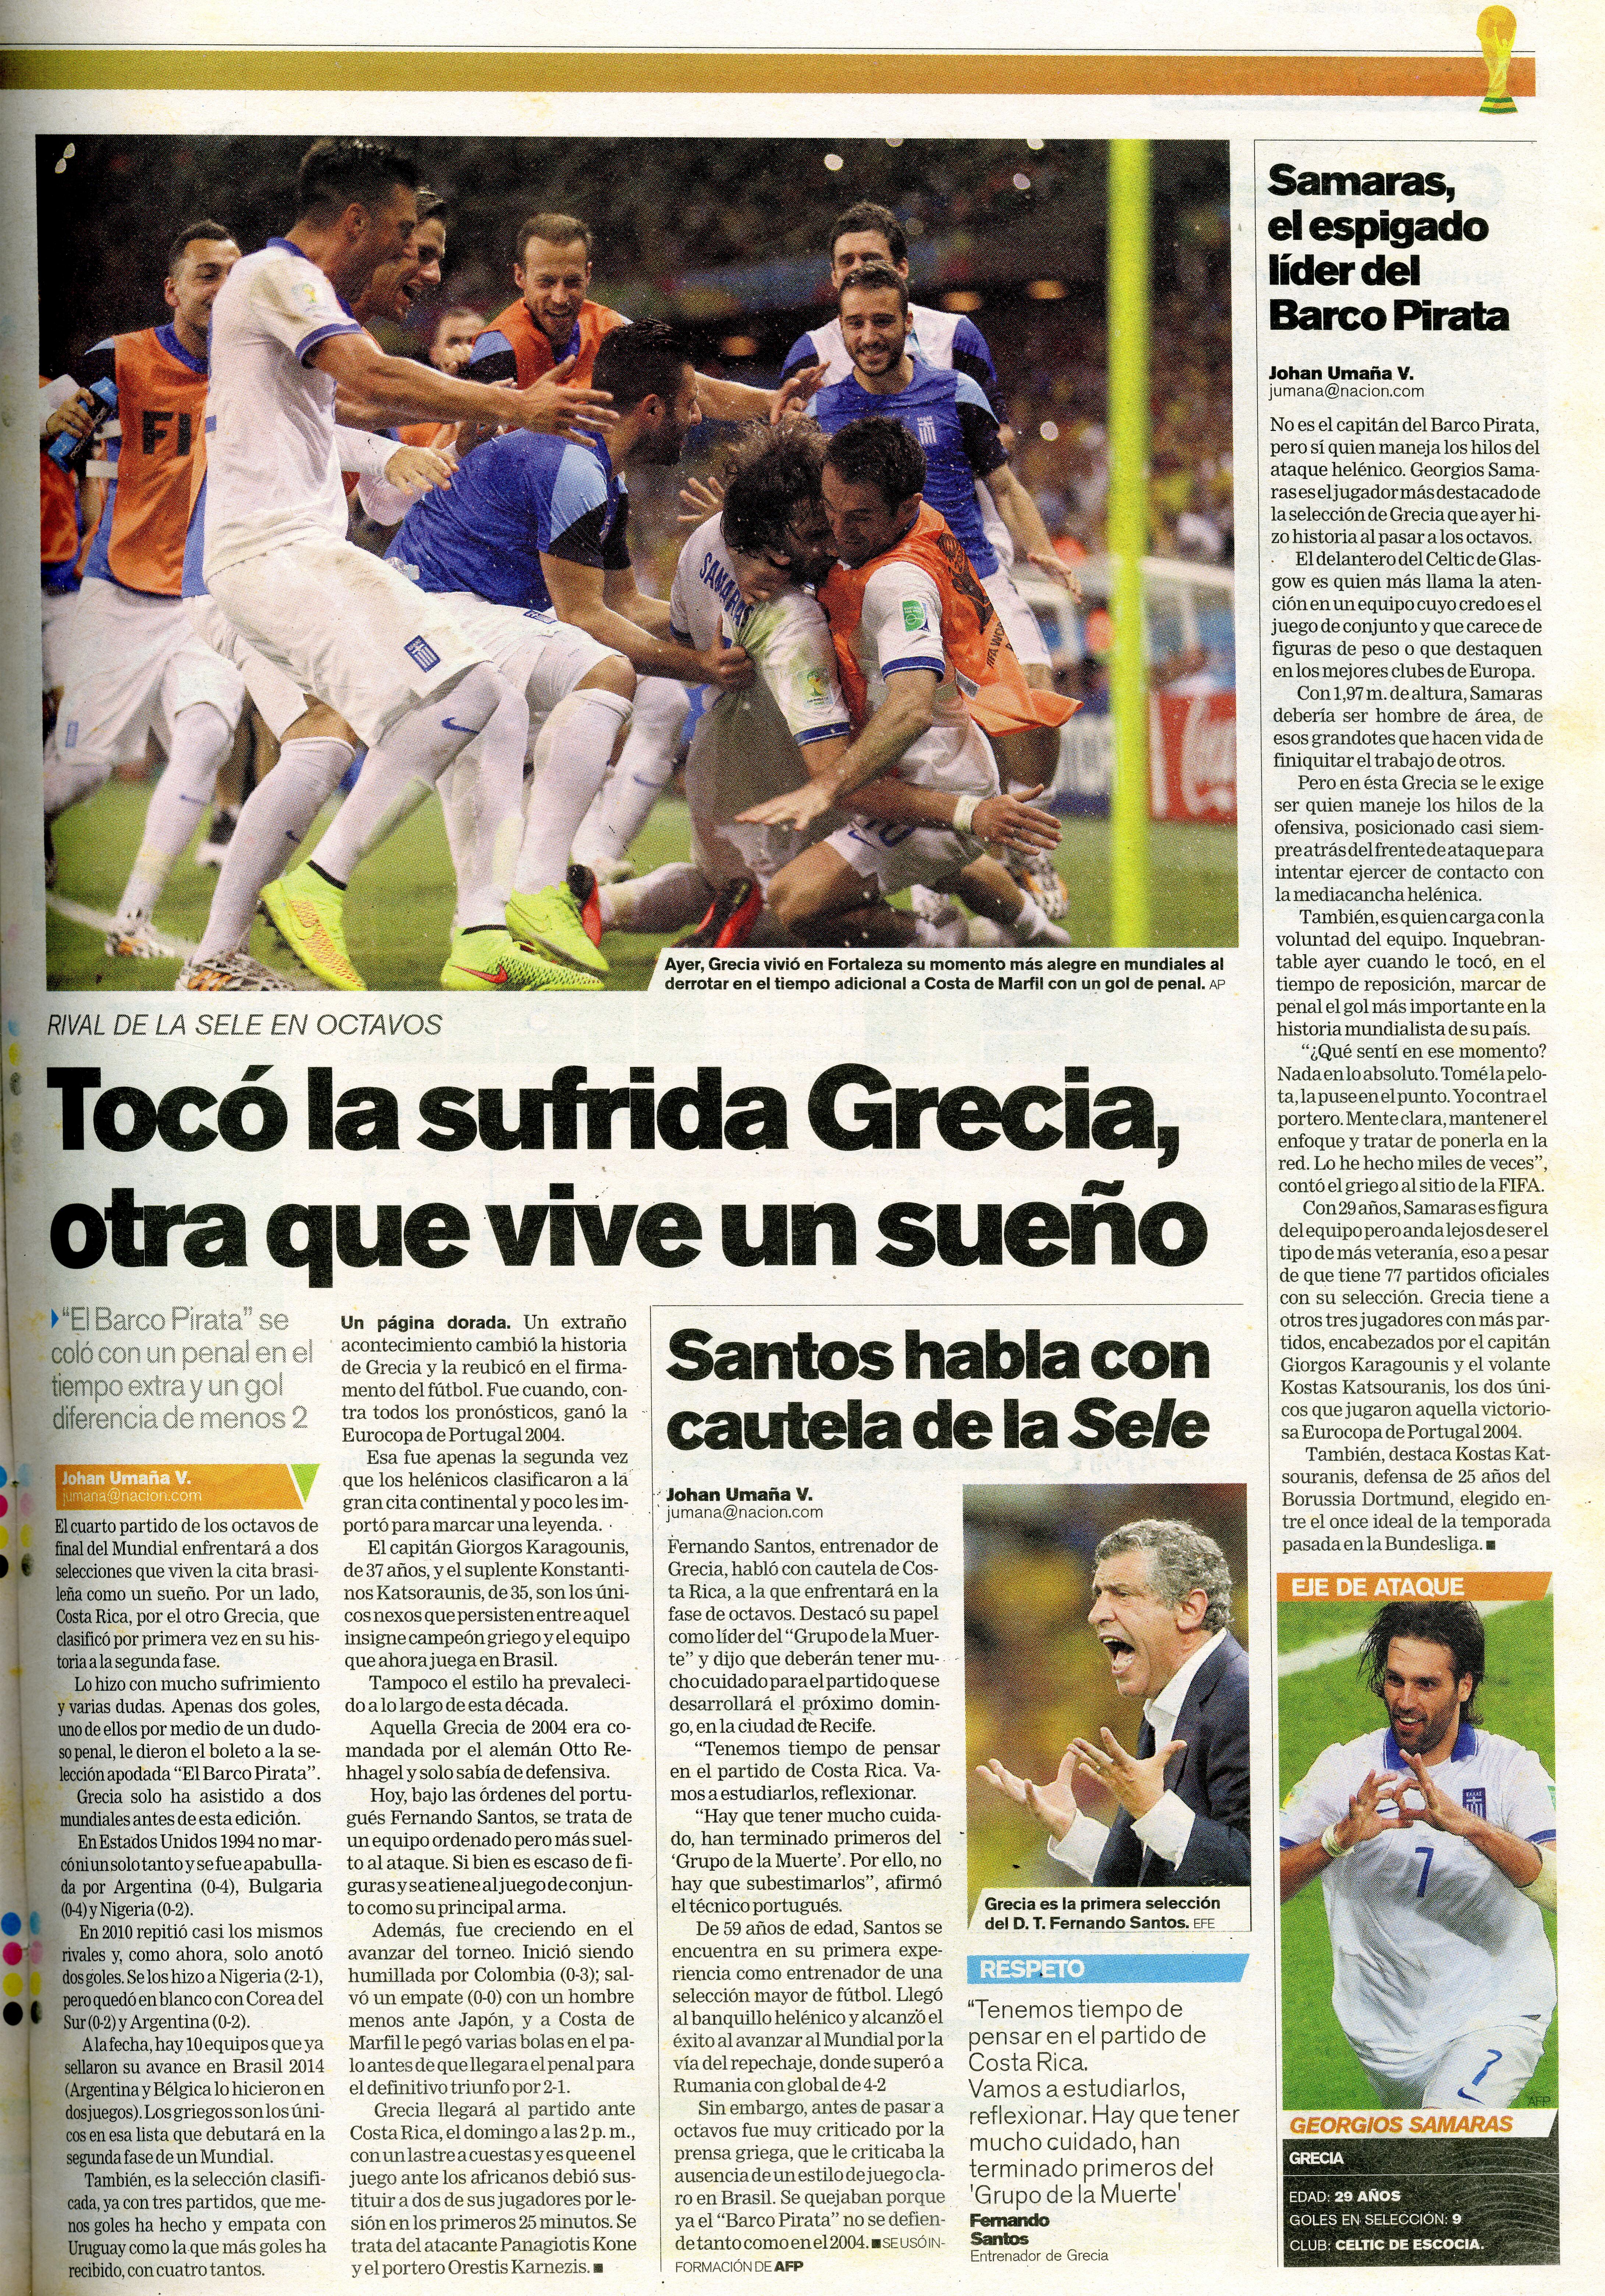 Grecia se confirmó como el rival de la Selección de Costa Rica en los octavos de final del Mundial de Brasil 2014.